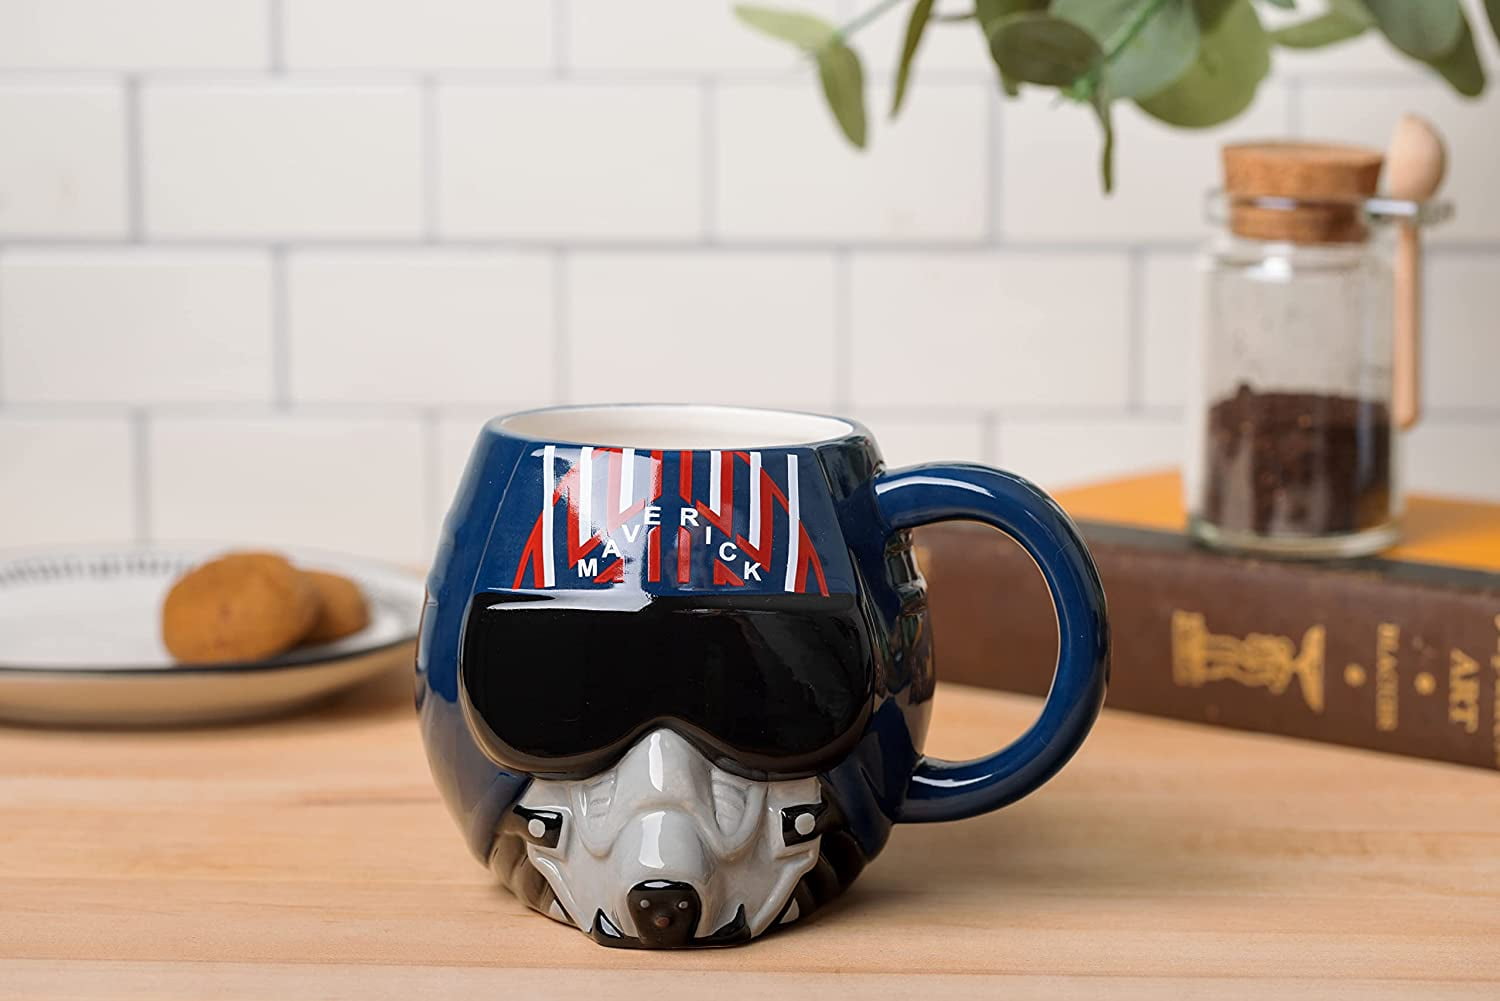 Til Death Star Do Us Part - Star Wars Mug Set